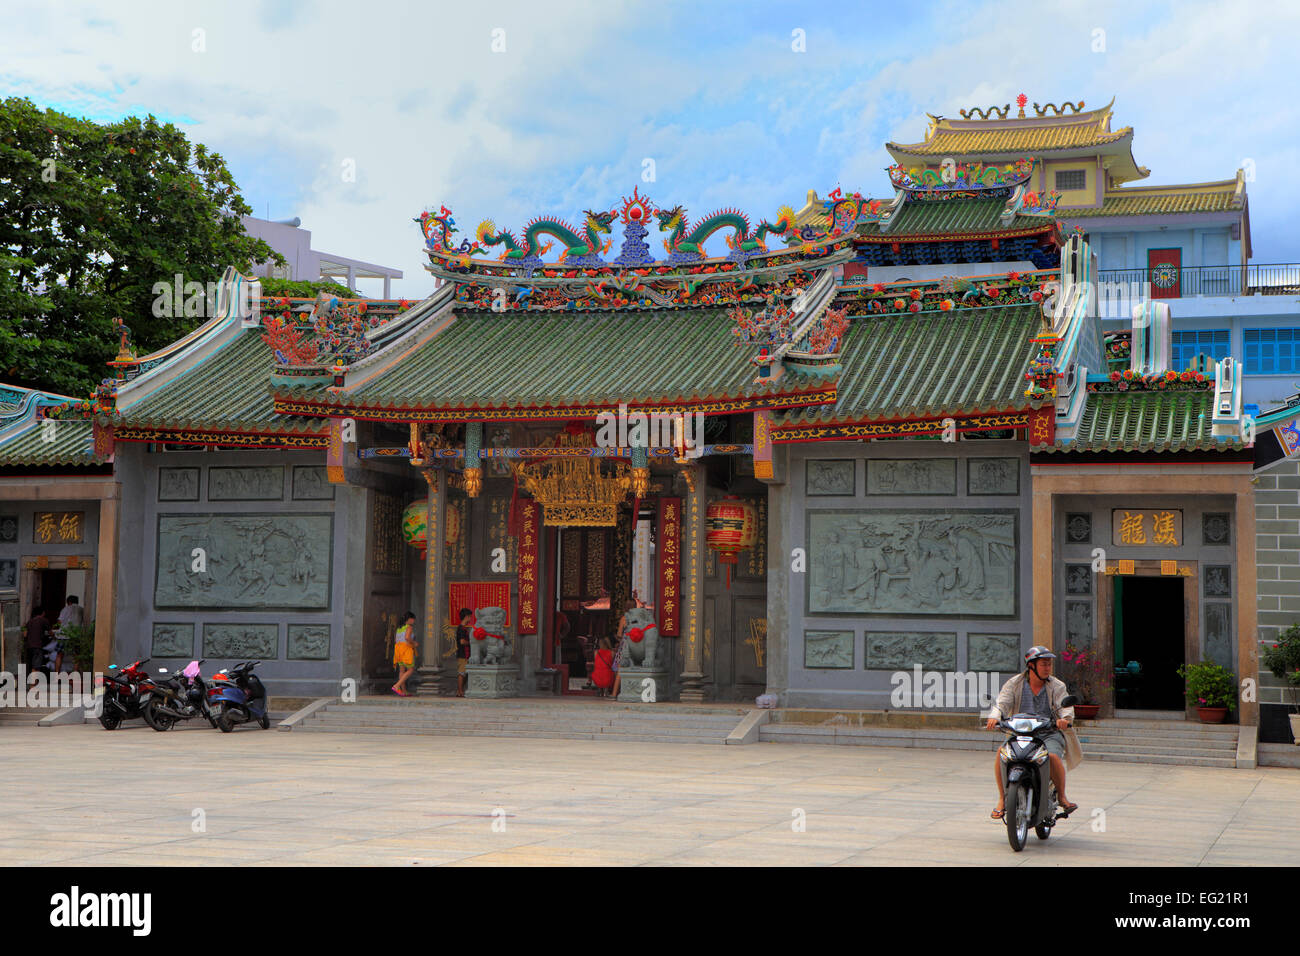 Tham figlio Noi tempio, Cholon, Città di Ho Chi Minh (Saigon), Vietnam Foto Stock